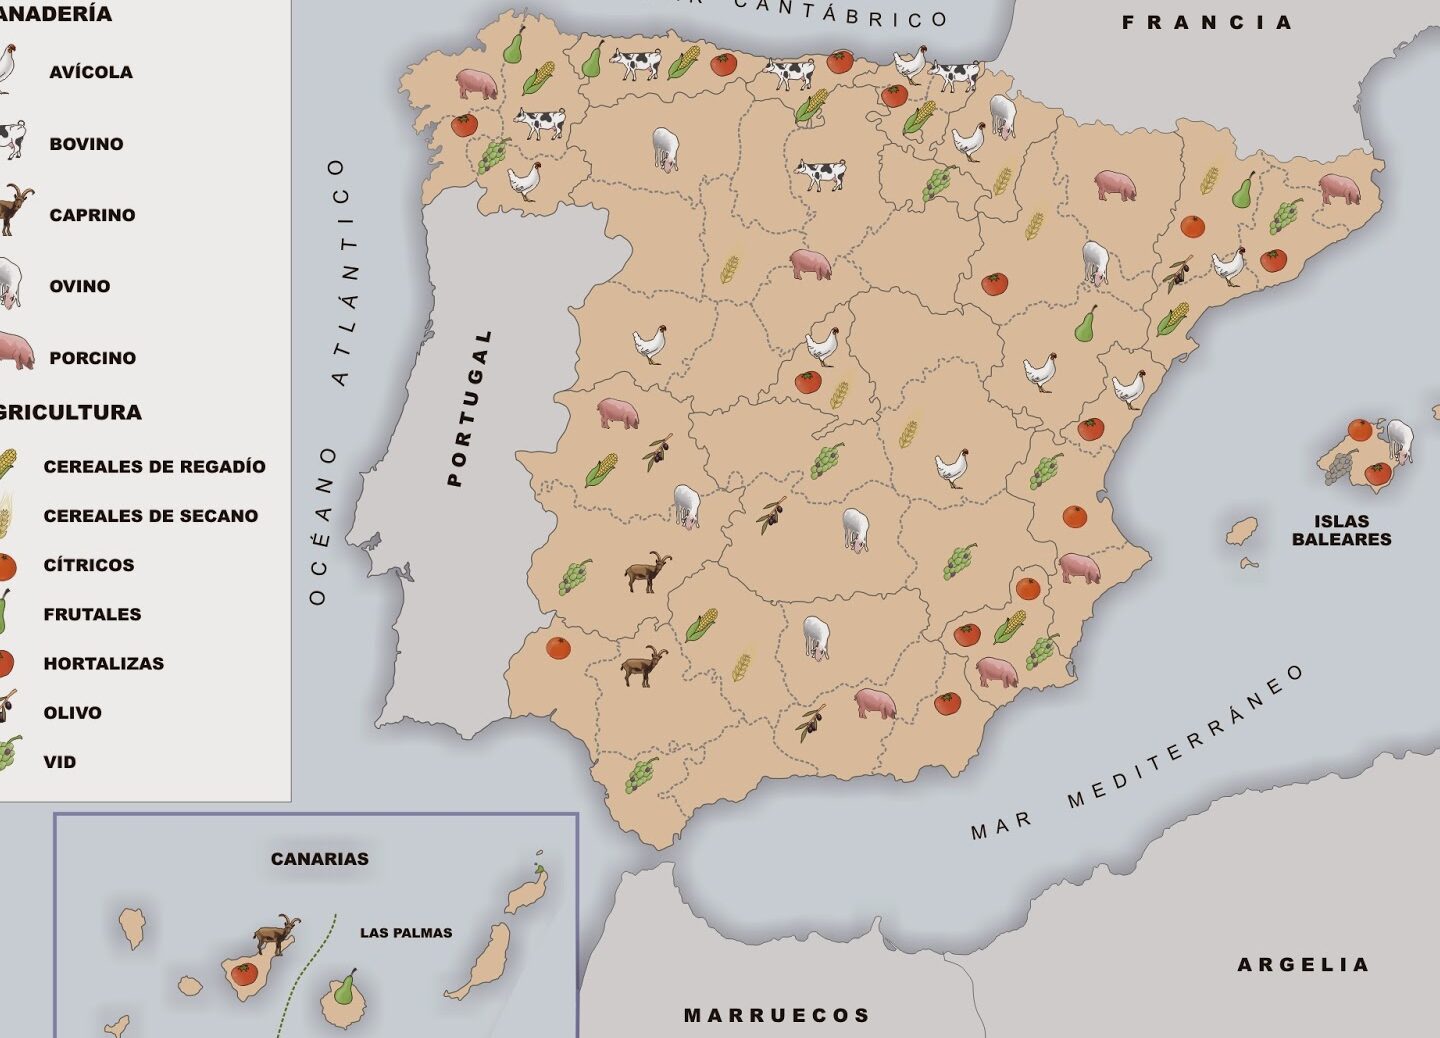 20 ejemplos de la geografia de las principales regiones productoras de carne